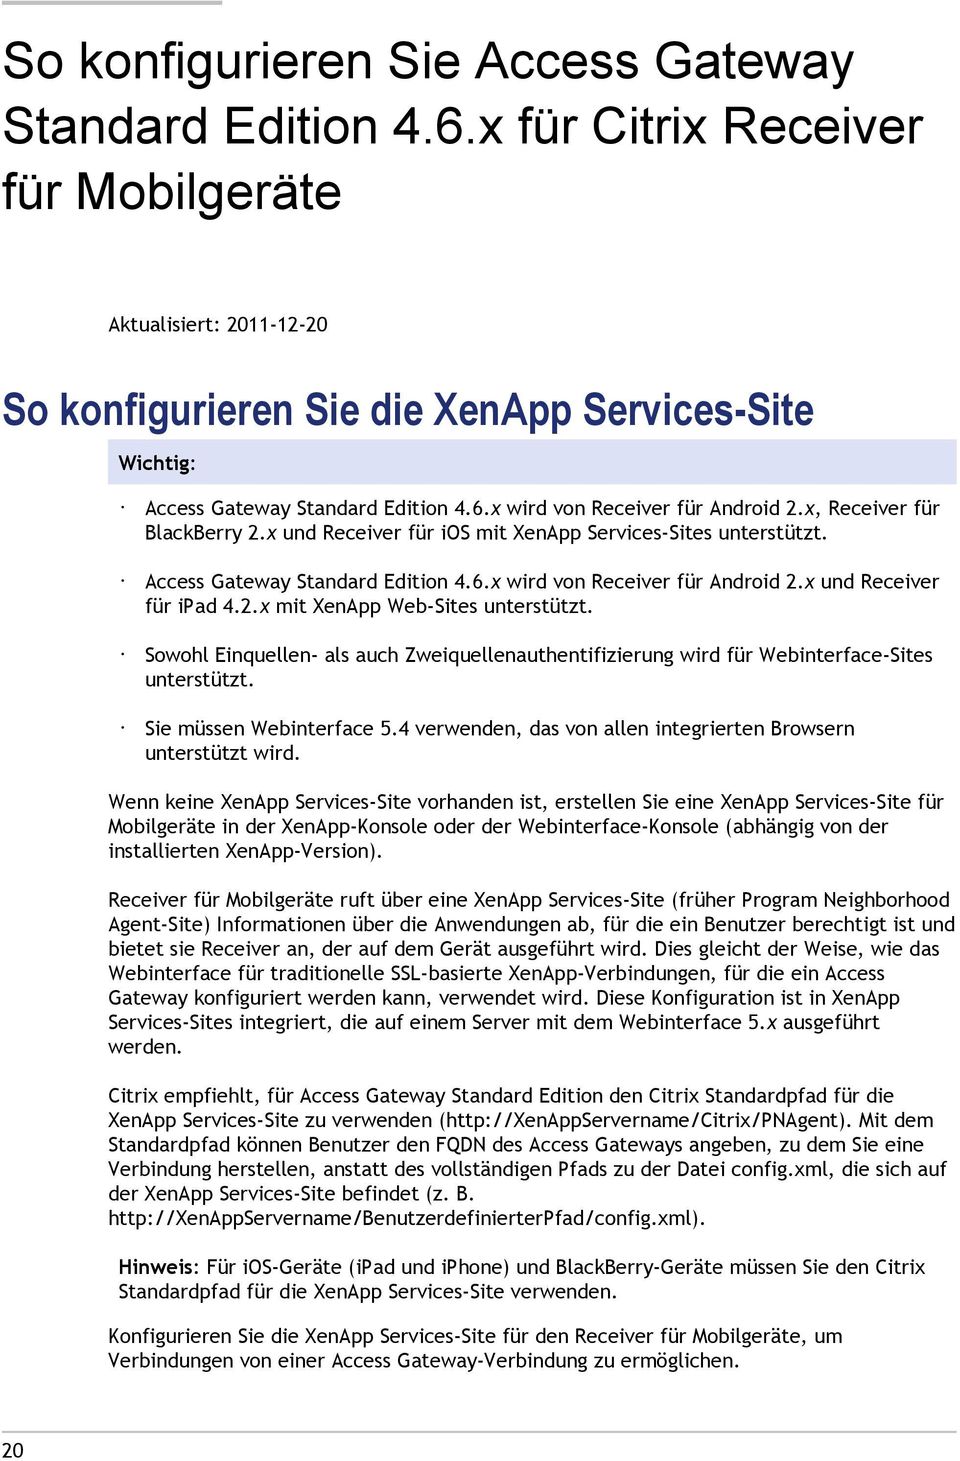 x, Receiver für BlackBerry 2.x und Receiver für ios mit XenApp Services-Sites unterstützt. Access Gateway Standard Edition 4.6.x wird von Receiver für Android 2.x und Receiver für ipad 4.2.x mit XenApp Web-Sites unterstützt.